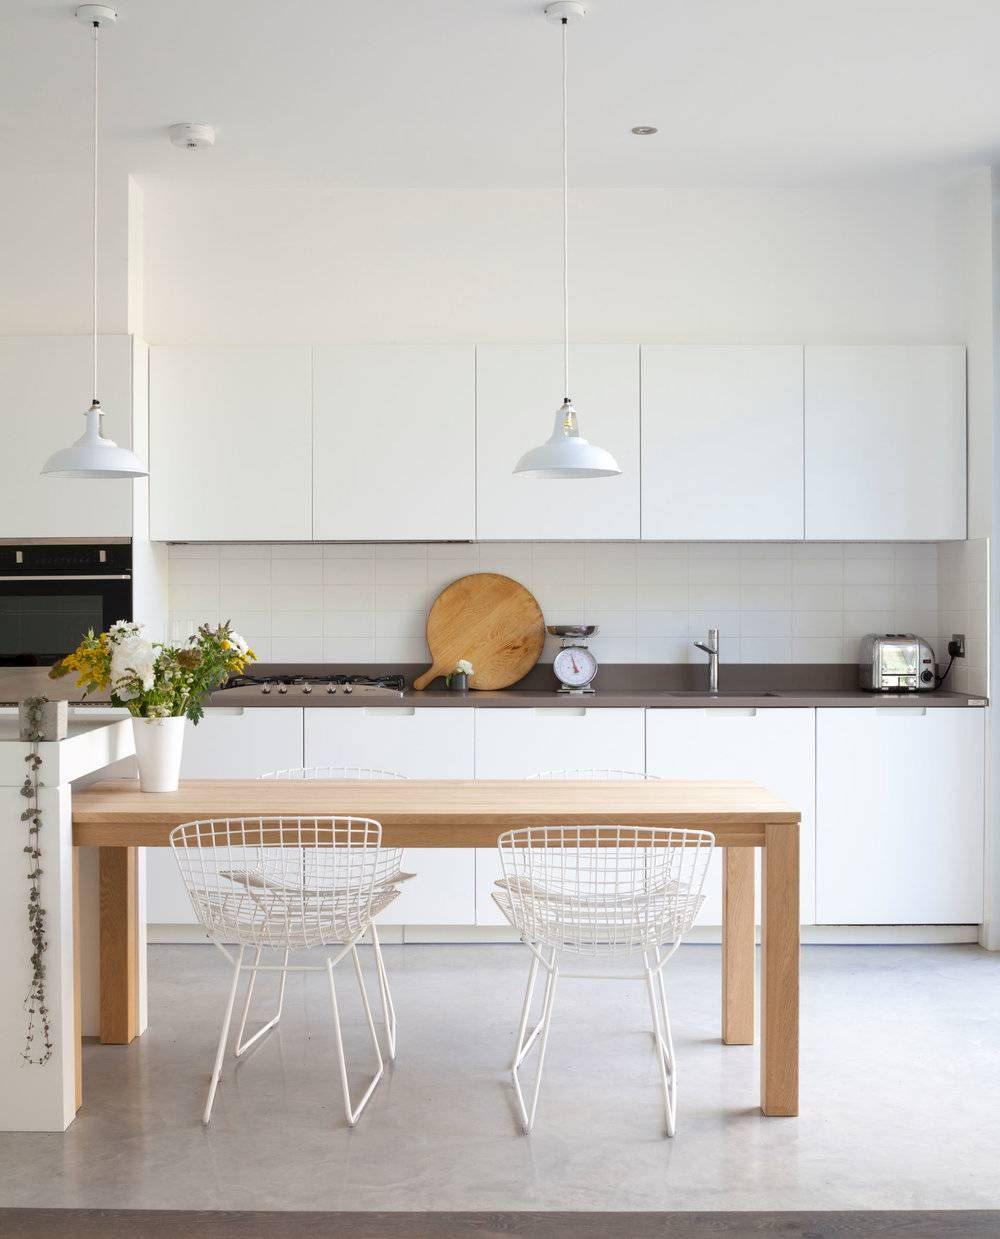 Küche skandinavischer Stil weisse Farbe Holztisch Wohnung minimalistisch einrichten